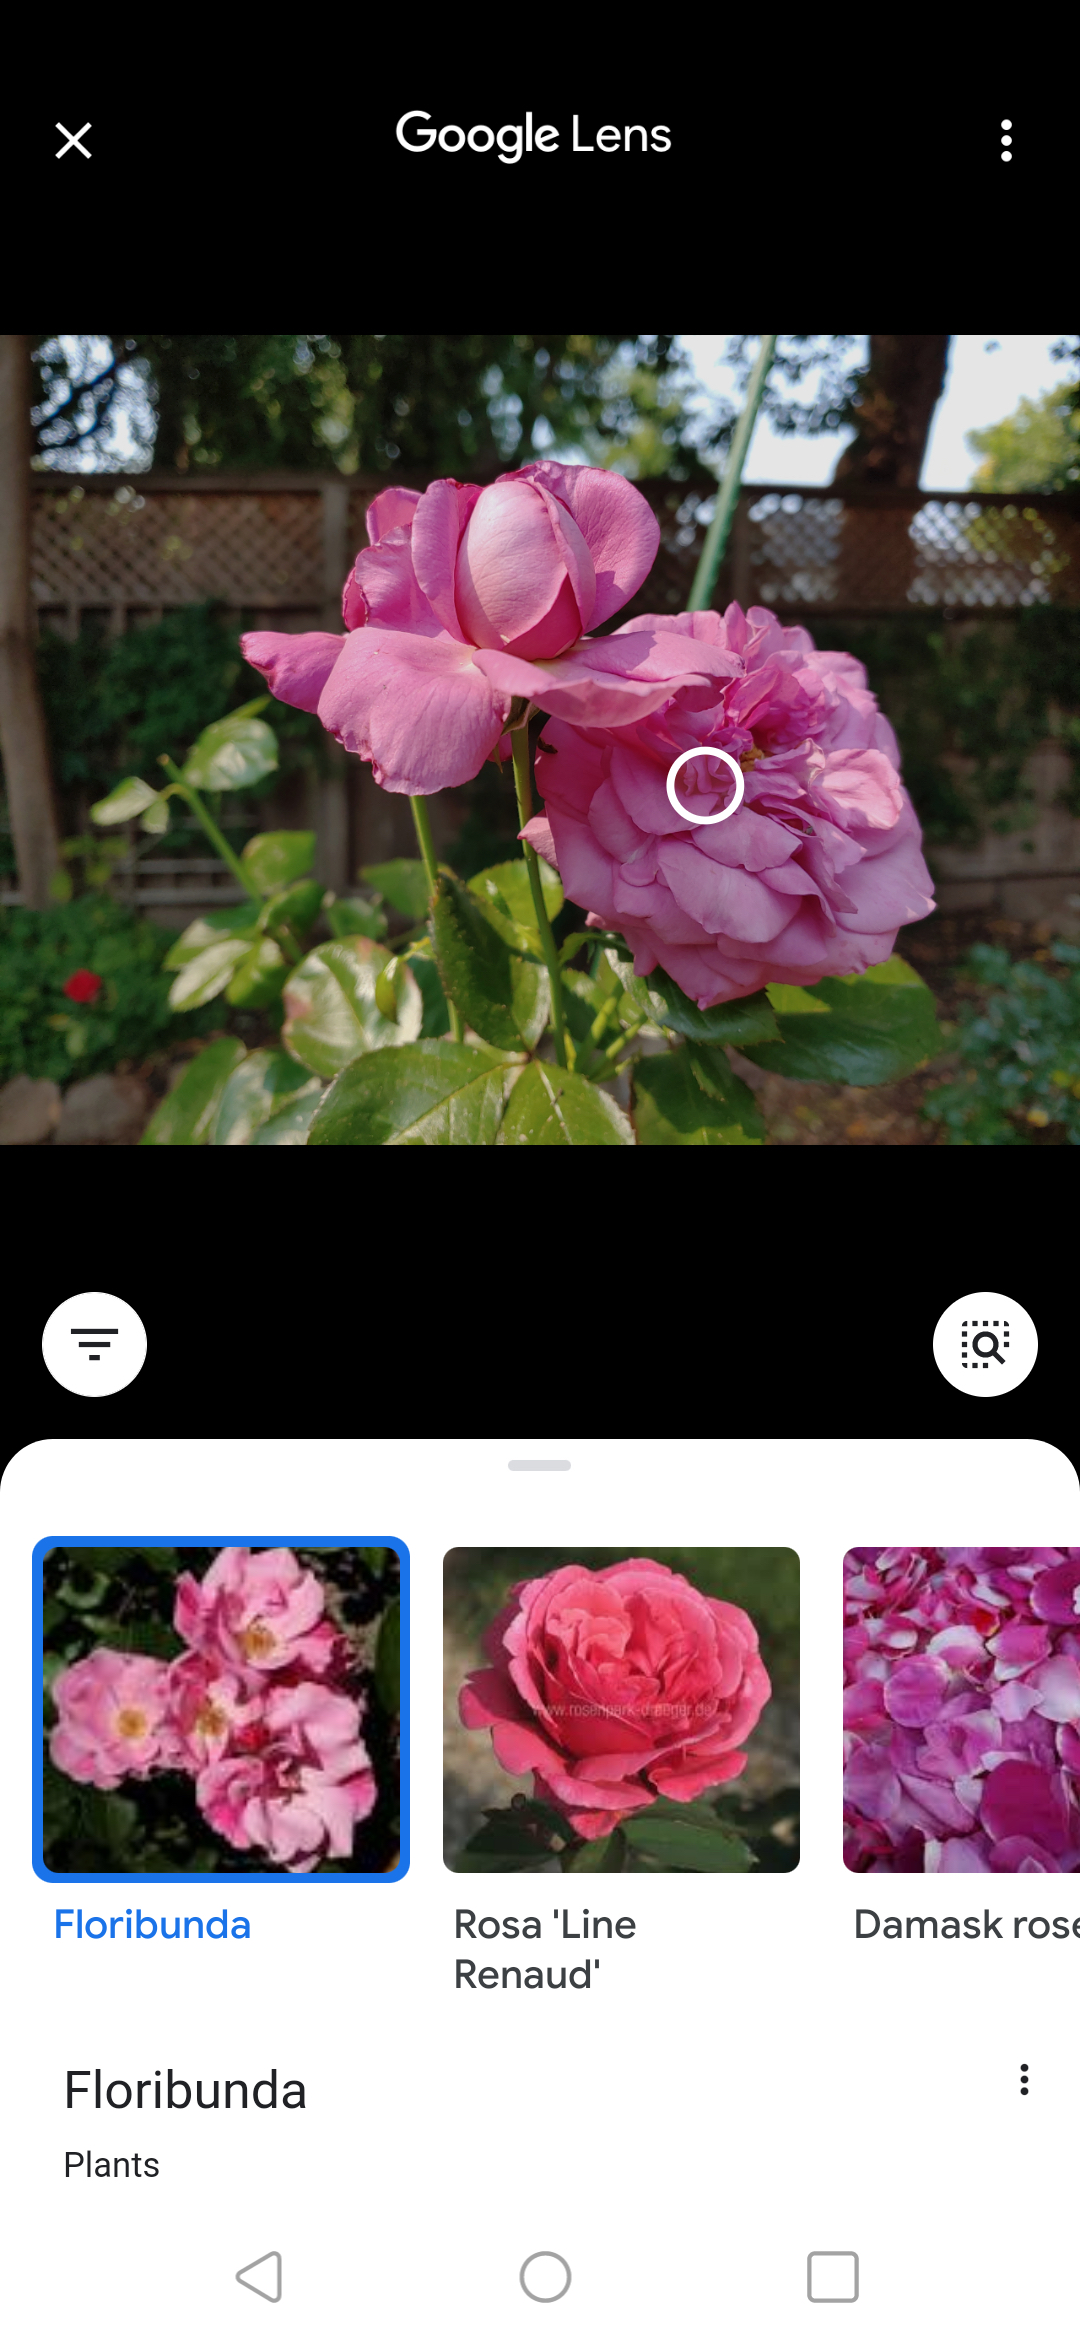 Passaggio 3: Google Lens eseguirà una ricerca inversa dell'immagine, identificherà l'immagine e offrirà alternative simili.